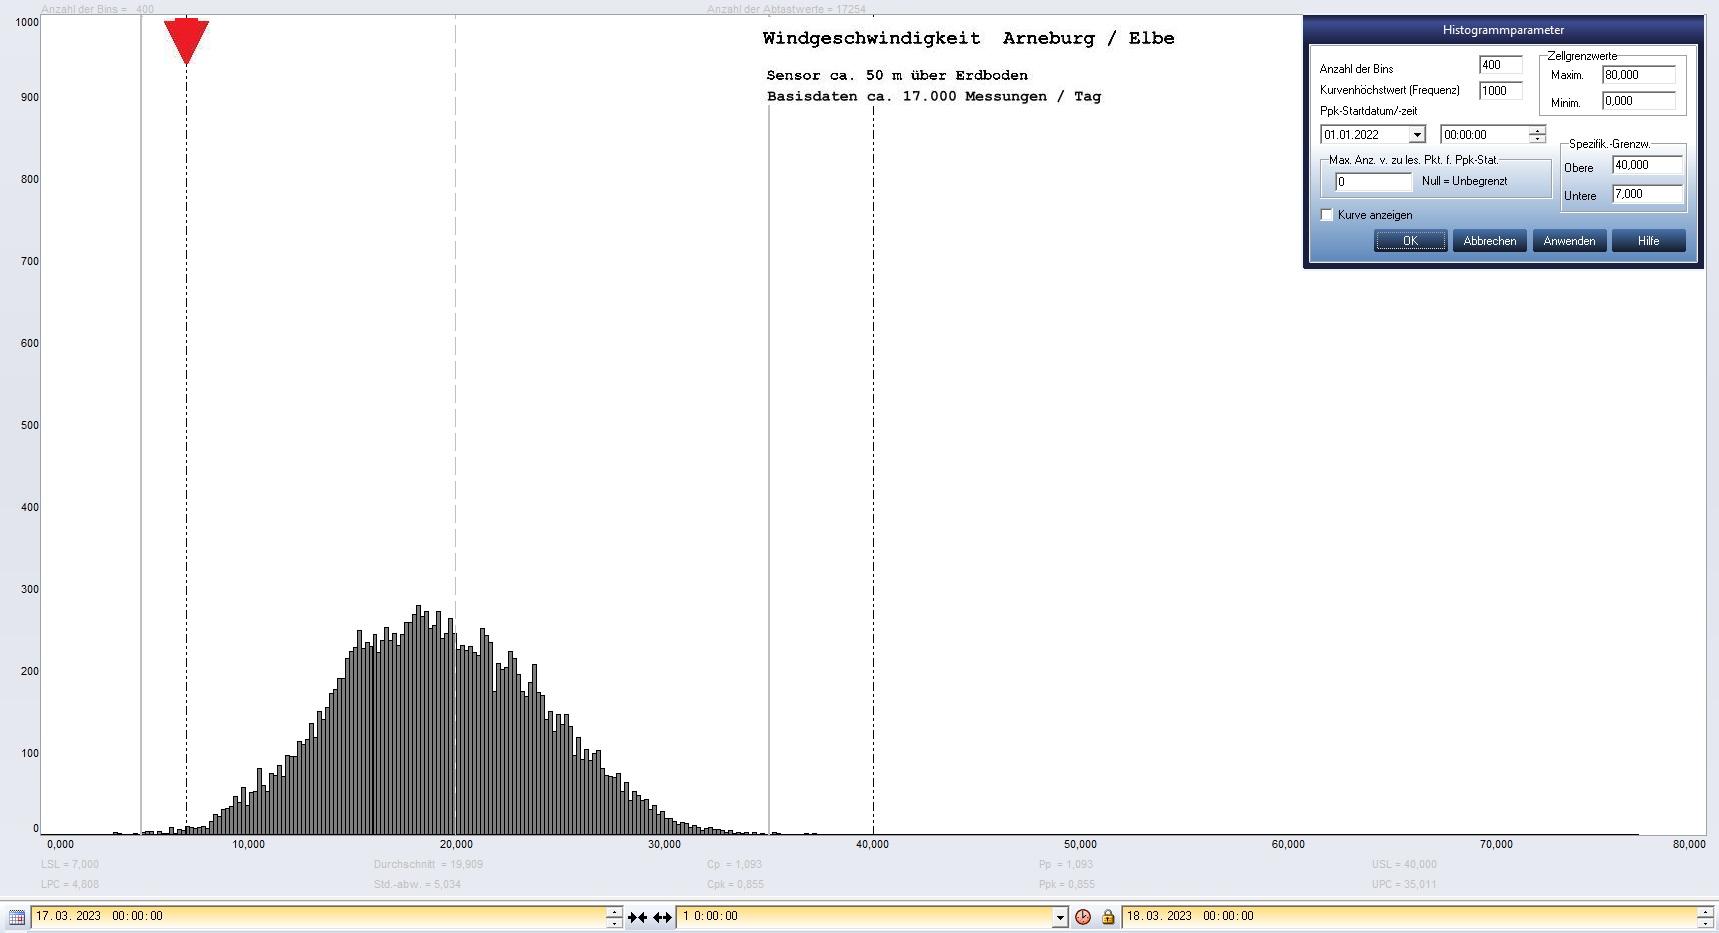 Arneburg Tages-Histogramm Winddaten, 17.03.2023
  Histogramm, Sensor auf Gebäude, ca. 50 m über Erdboden, Basis: 5s-Aufzeichnung